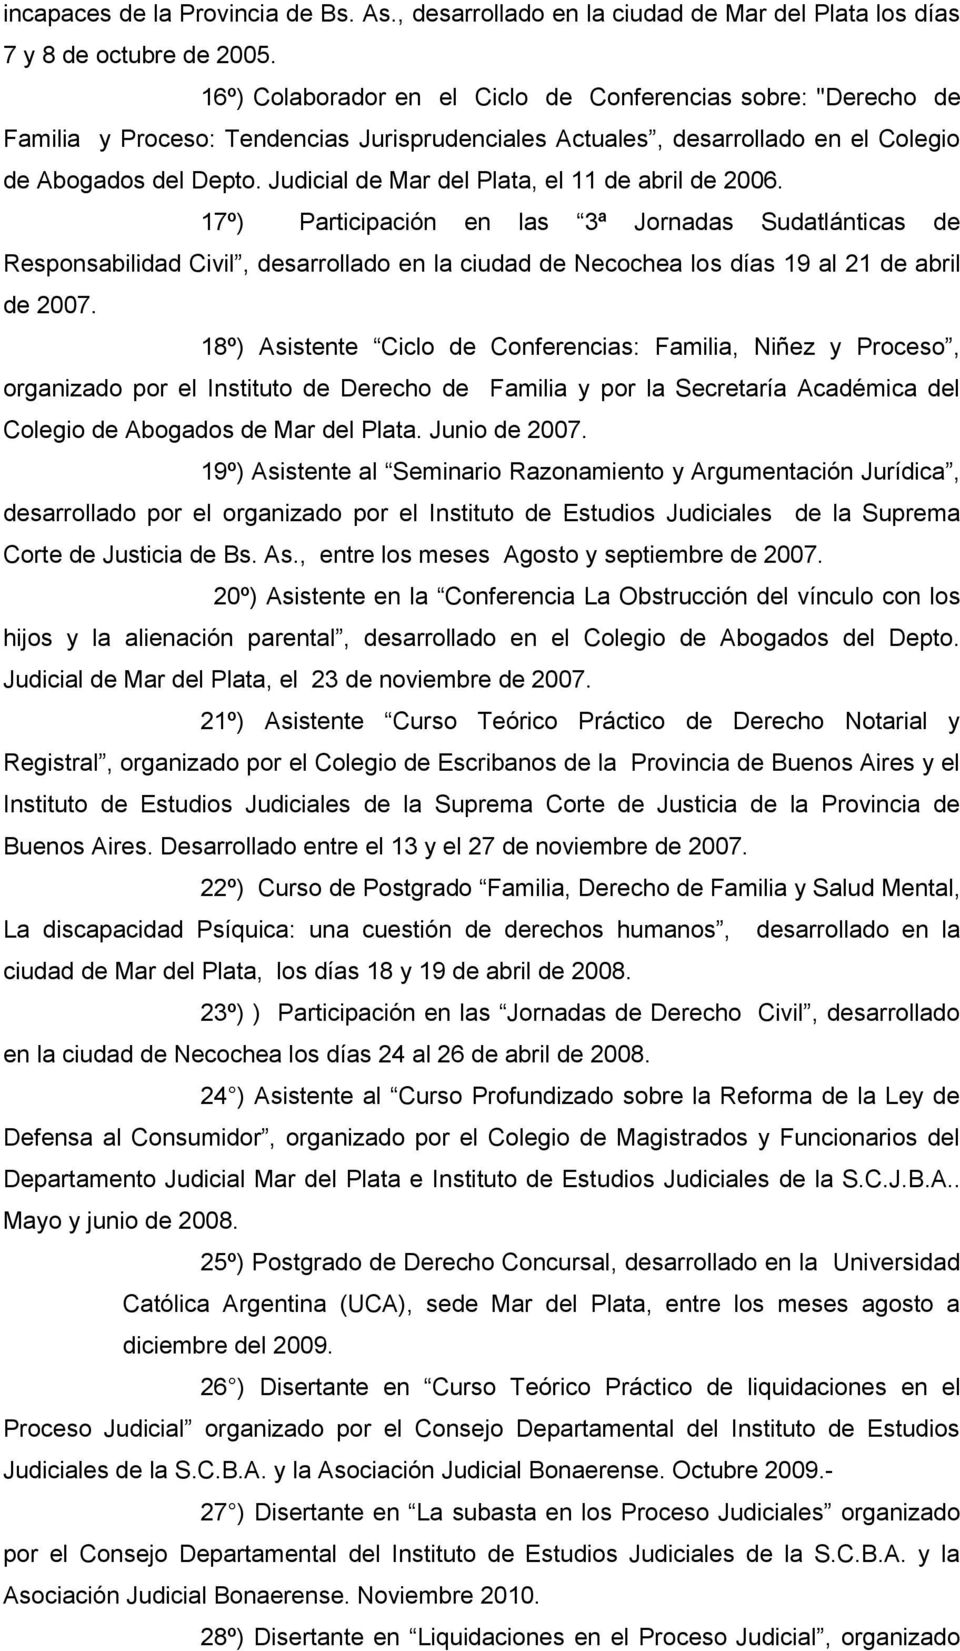 Judicial de Mar del Plata, el 11 de abril de 2006.